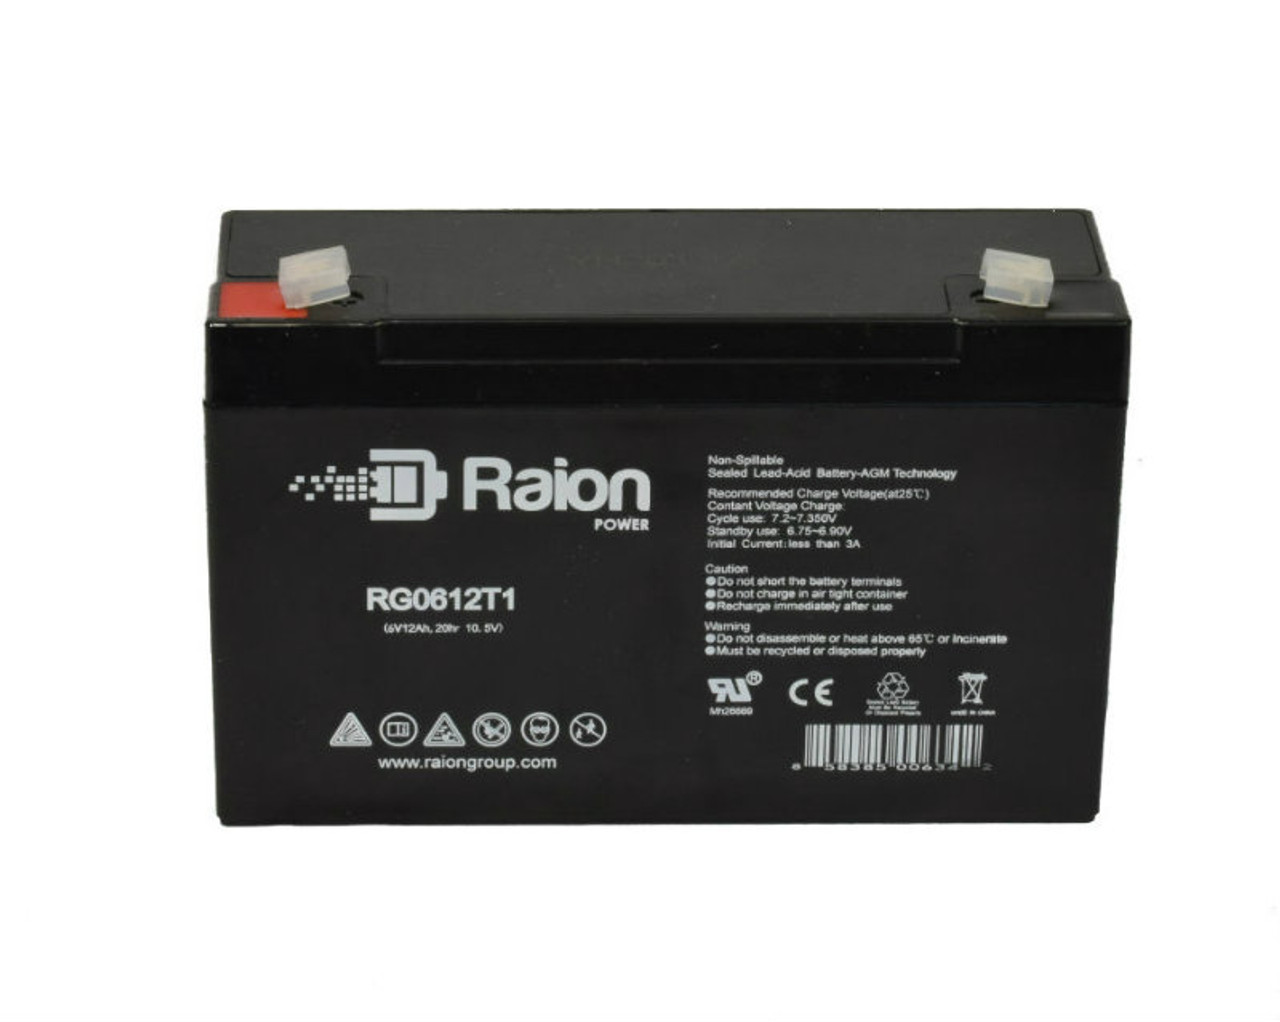 Raion Power RG06120T1 SLA Battery for Light Alarms RPG1H